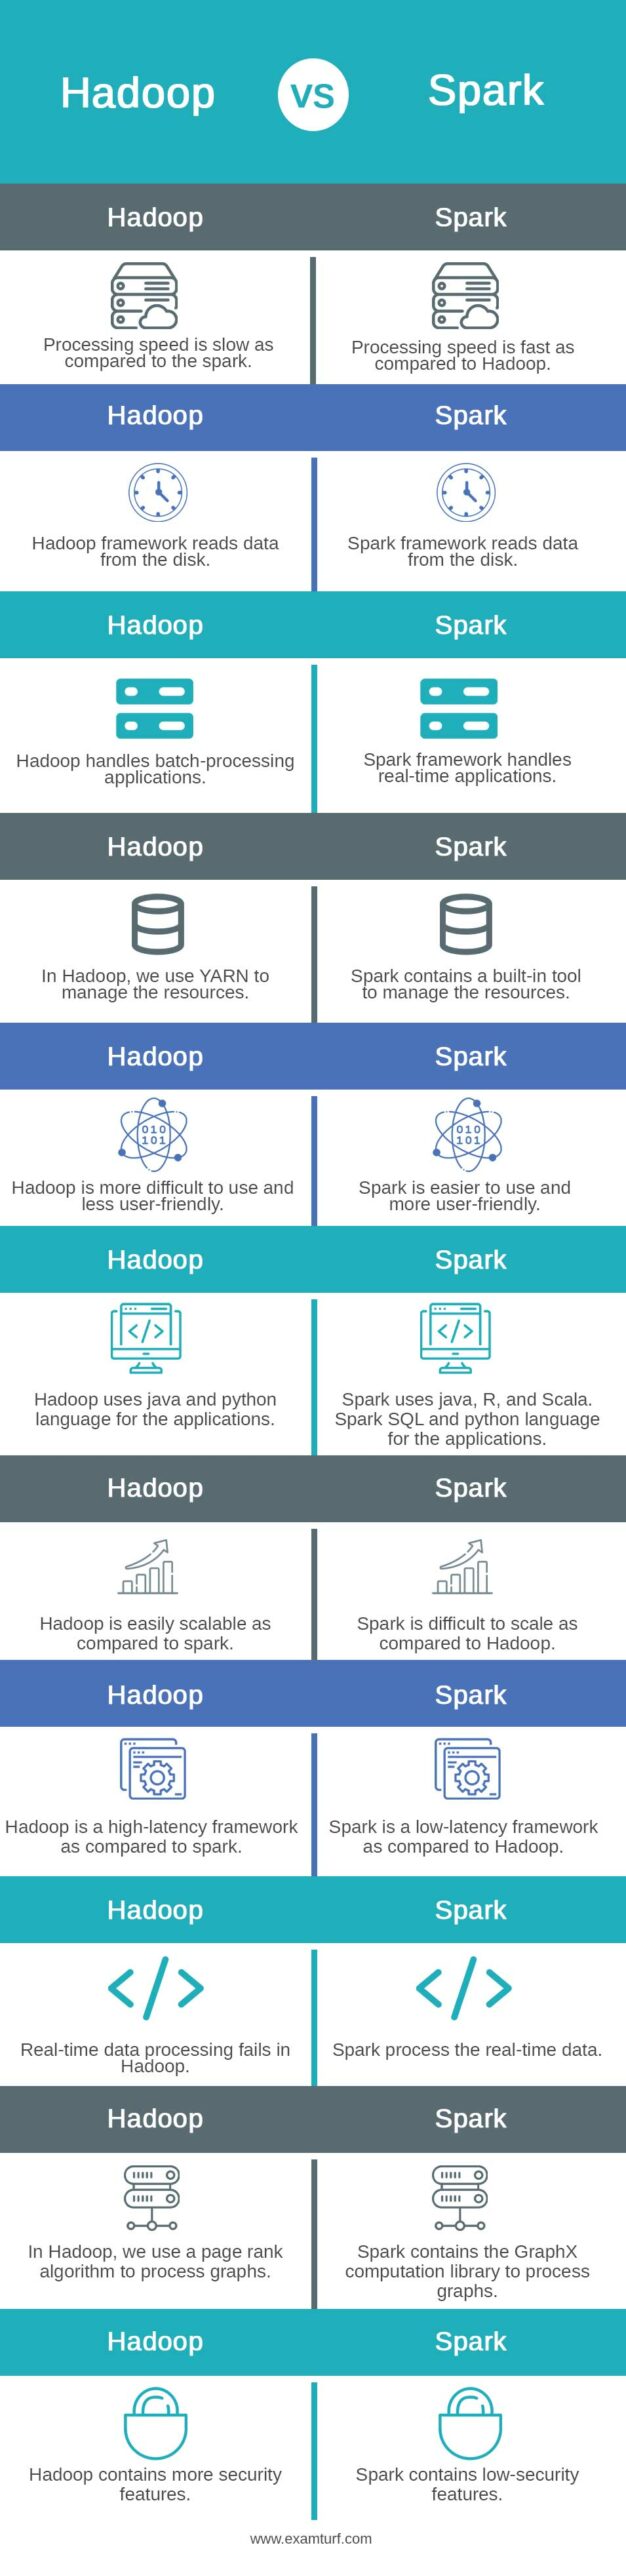 Hadoop-vs-Spark-info